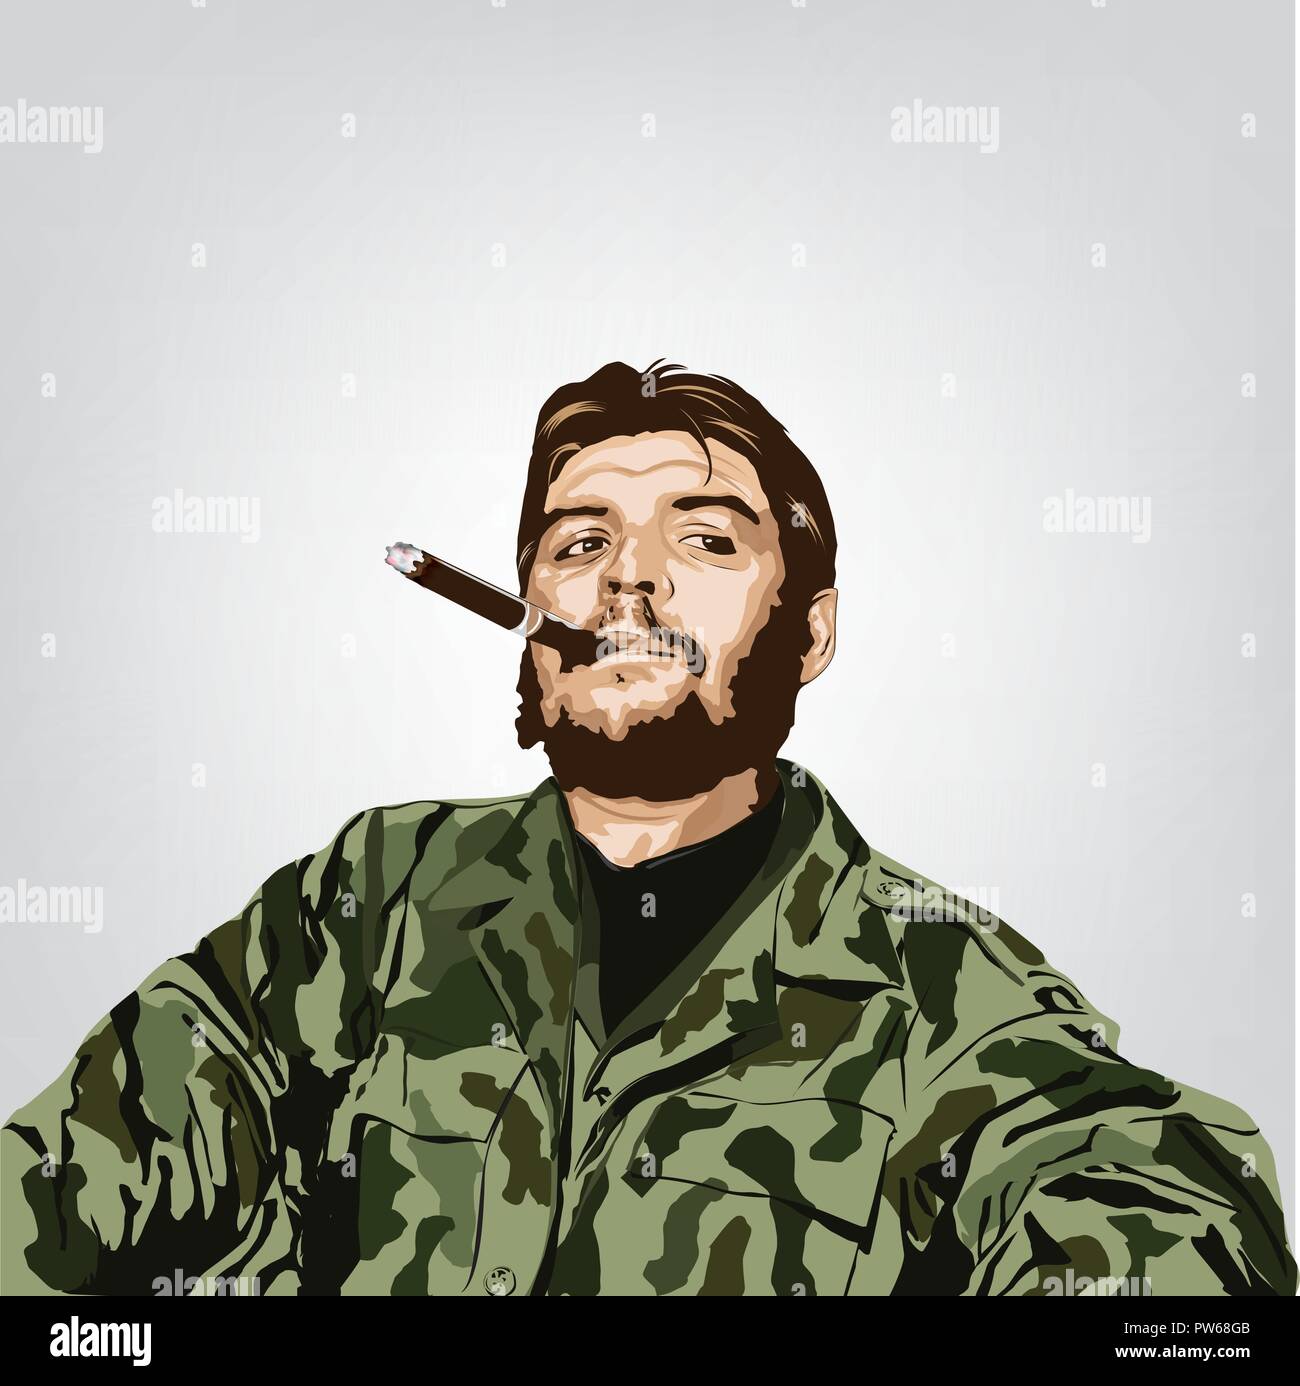 Ernesto 'Che' Guevara(1928 - 1967 ) était un révolutionnaire marxiste. Une grande figure de la révolution cubaine. Image Vecteur de Che Guevara, Illustration de Vecteur